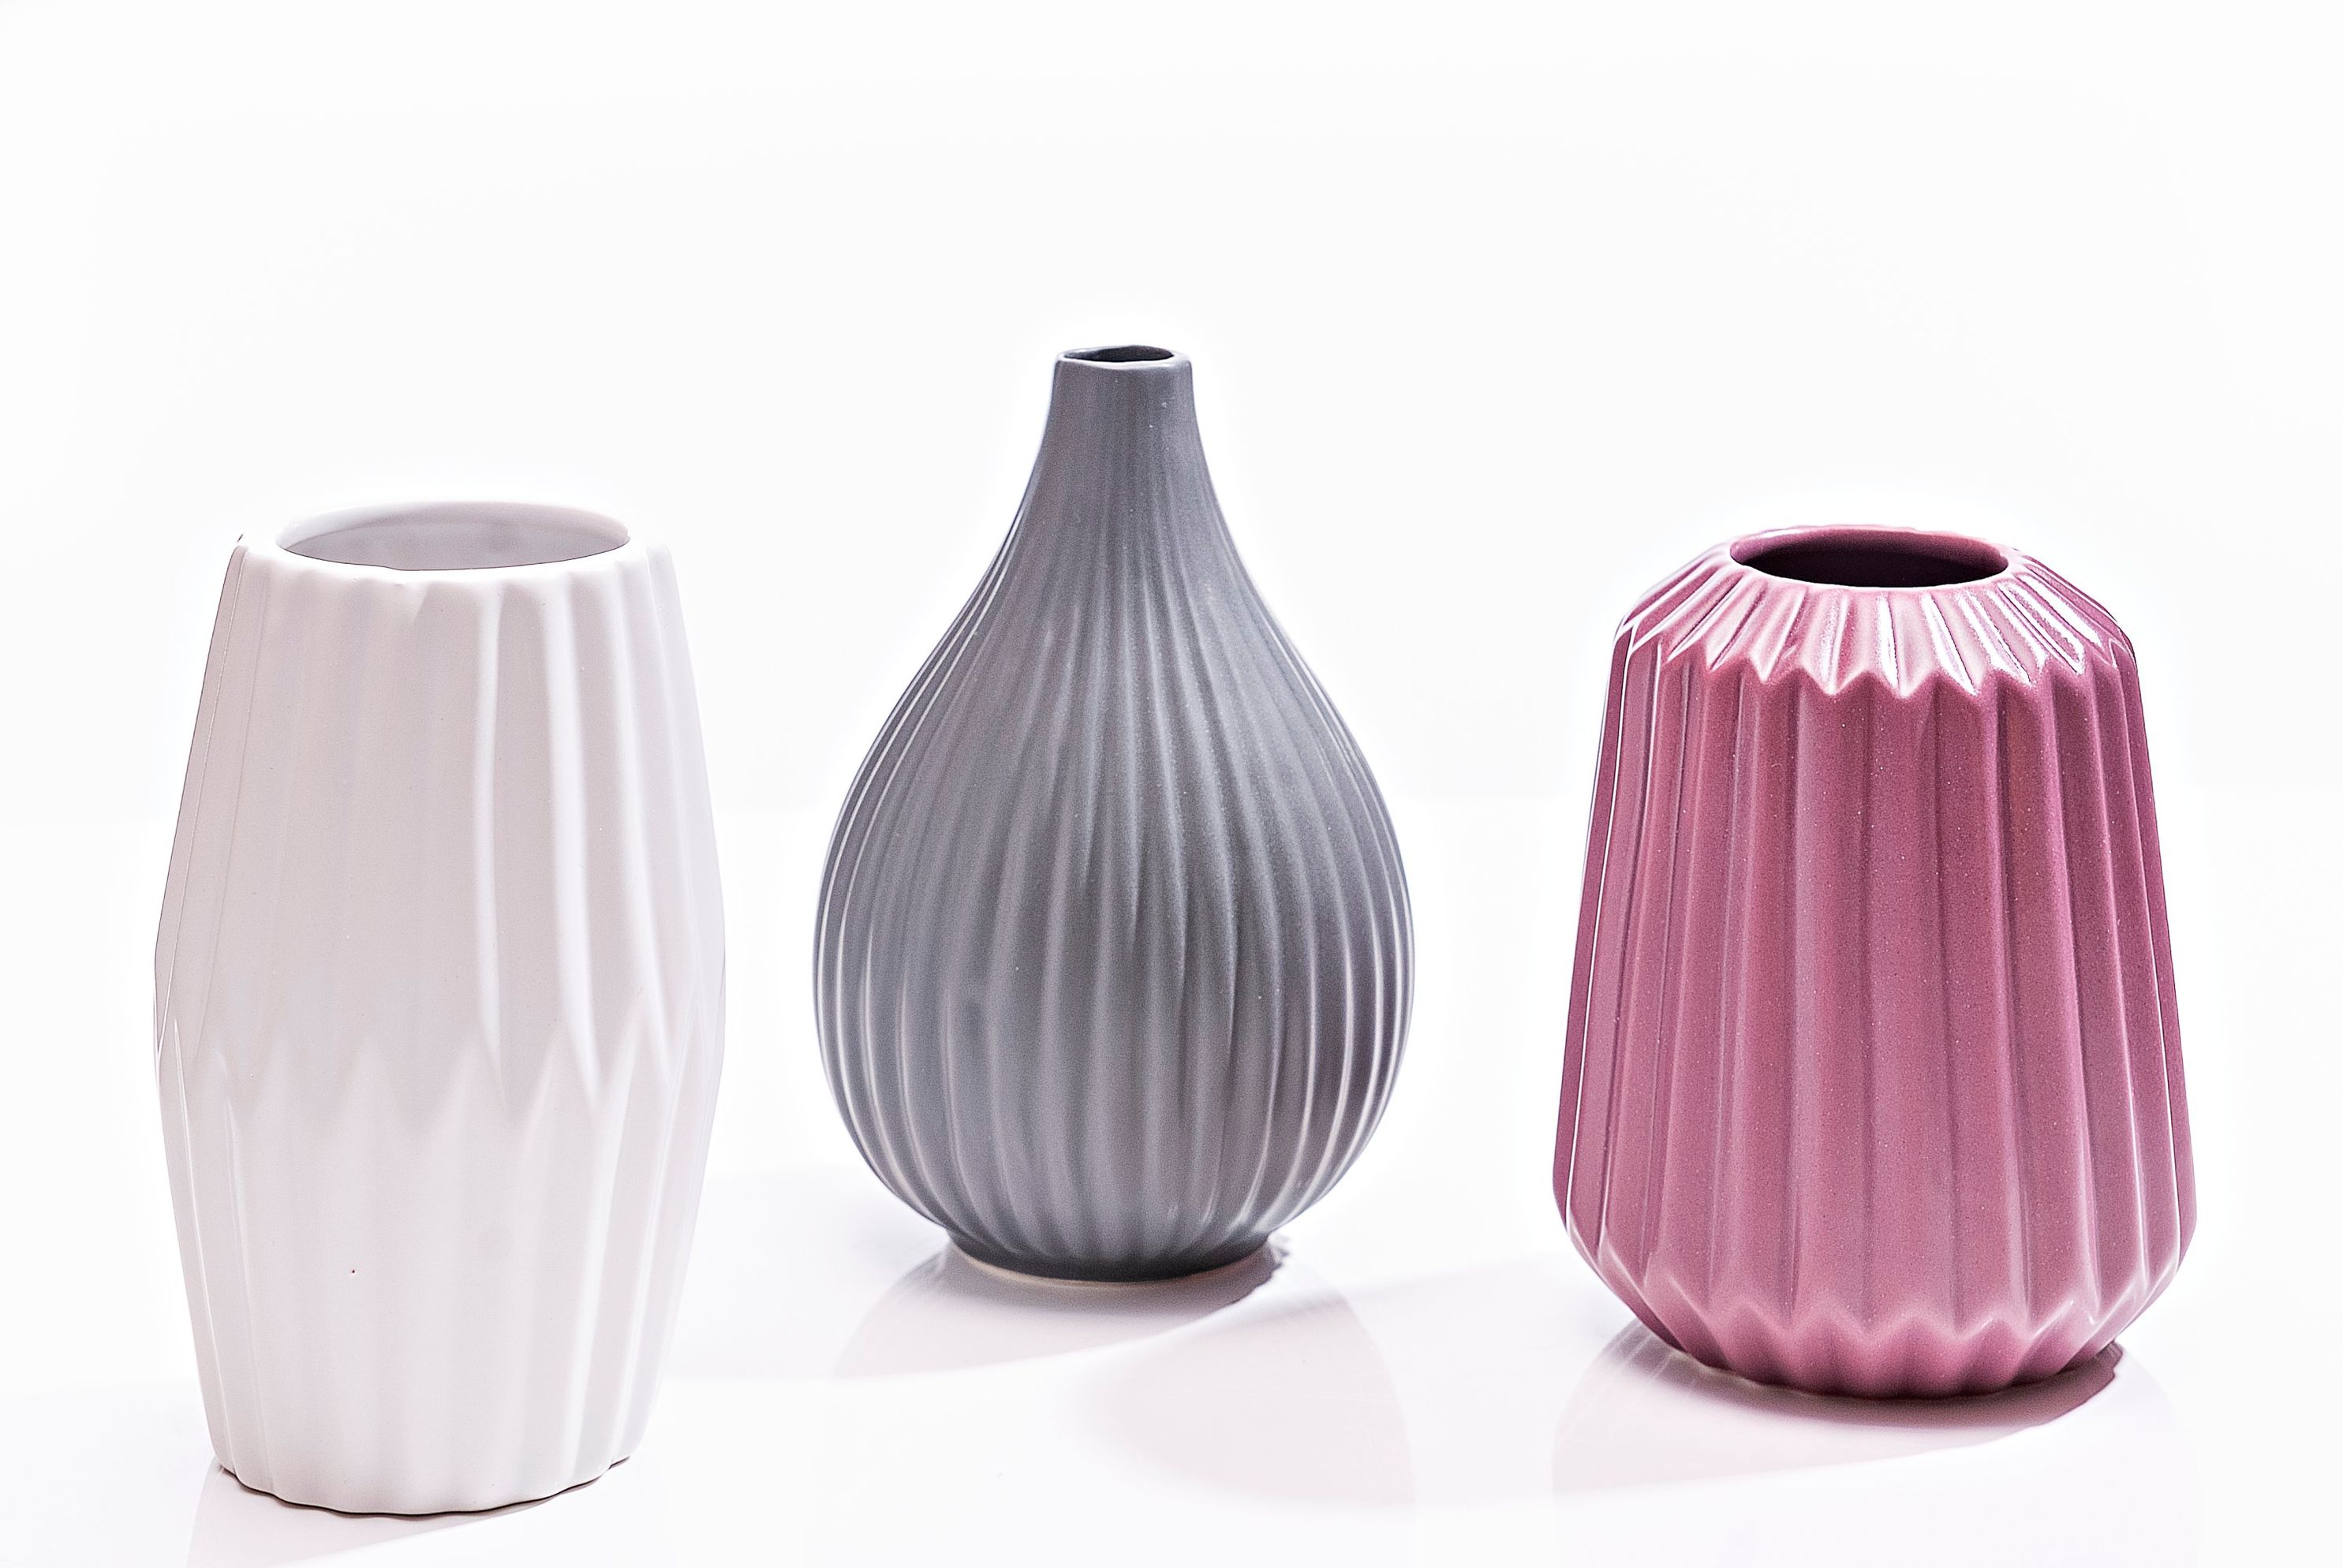 Keramik-Vasen 3er-Set jetzt bei Weltbild.de bestellen